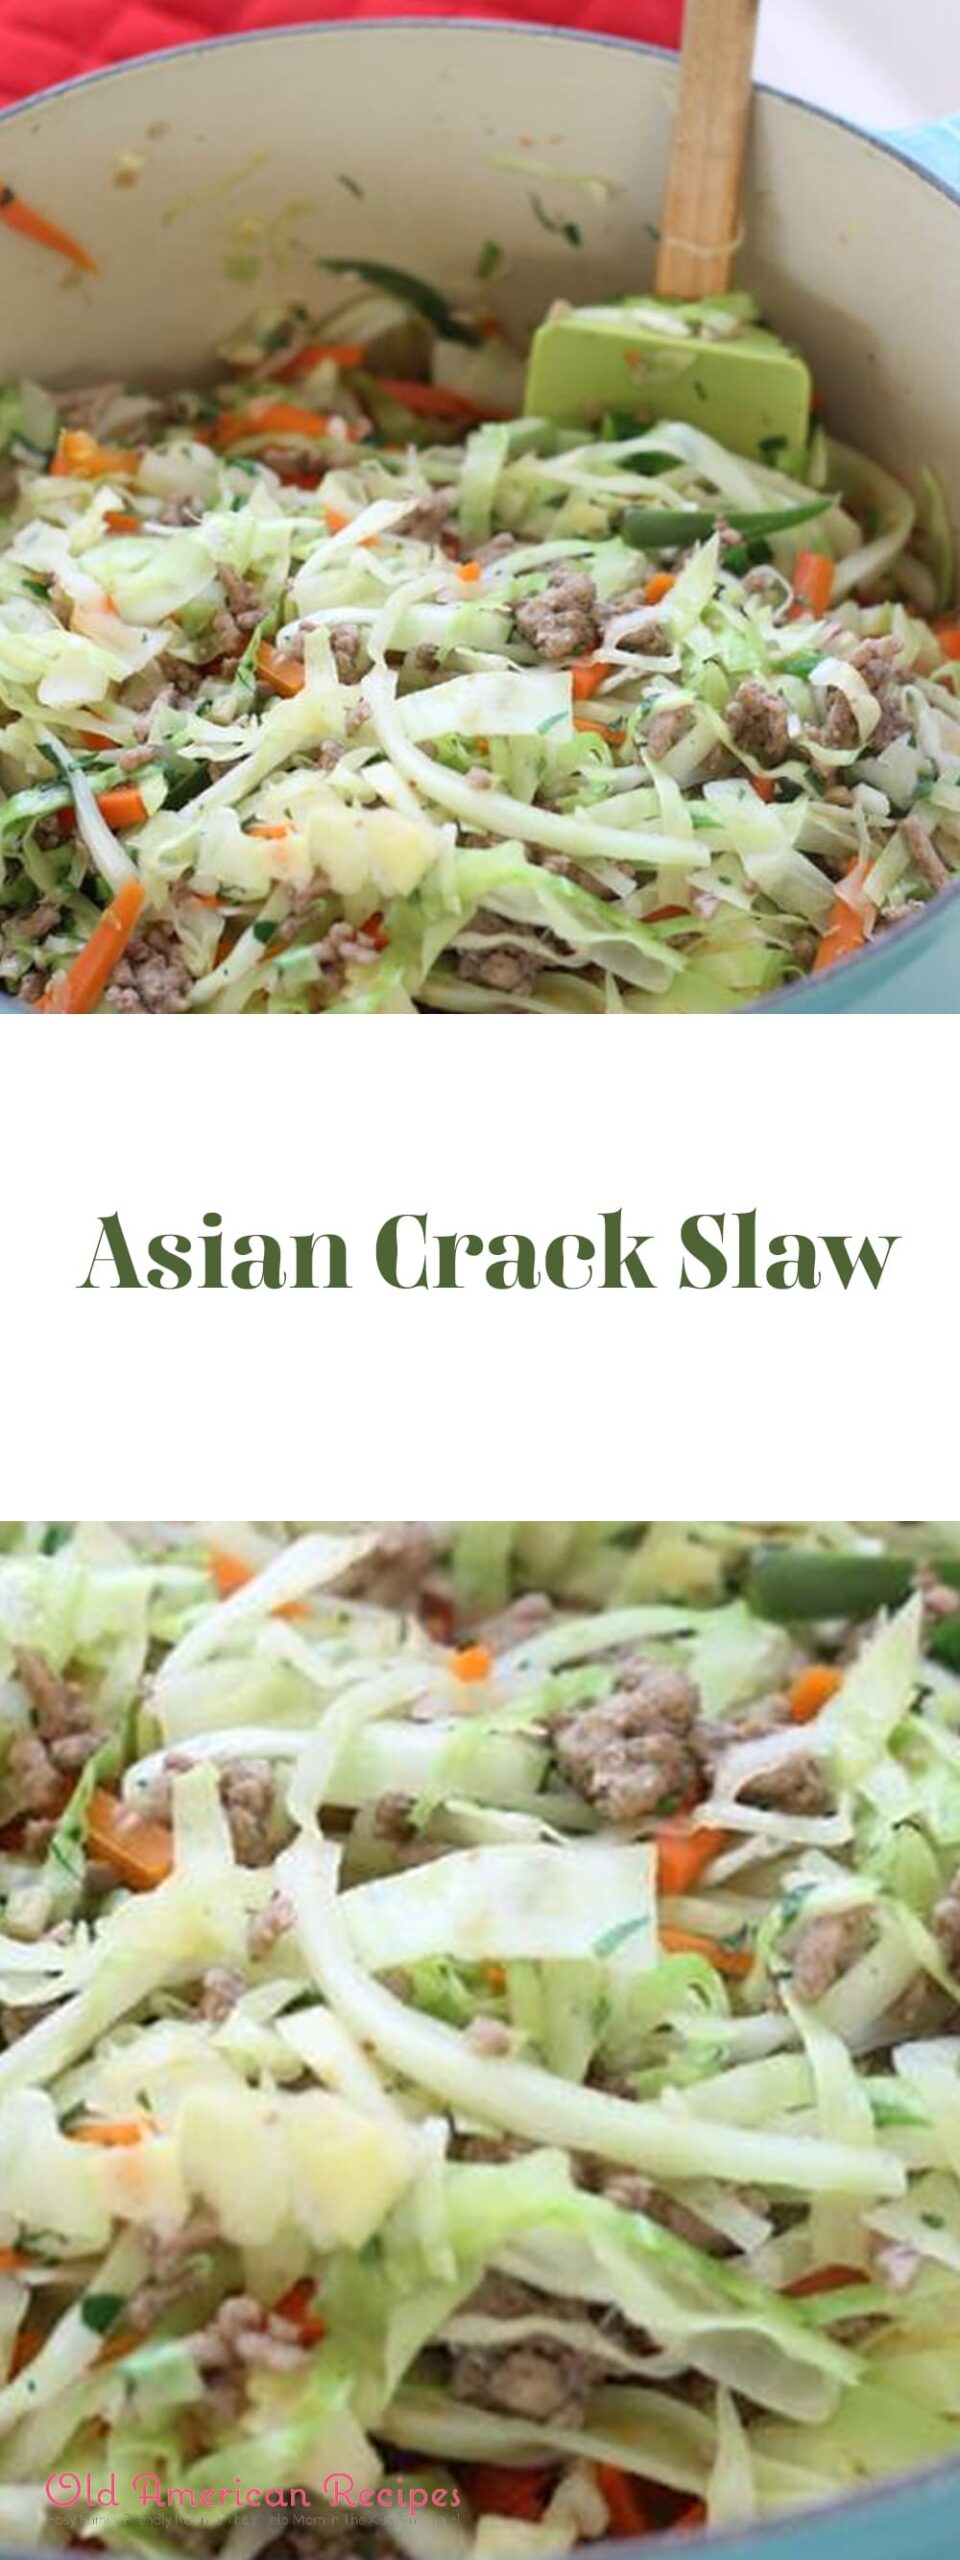 Asian Crack Slaw